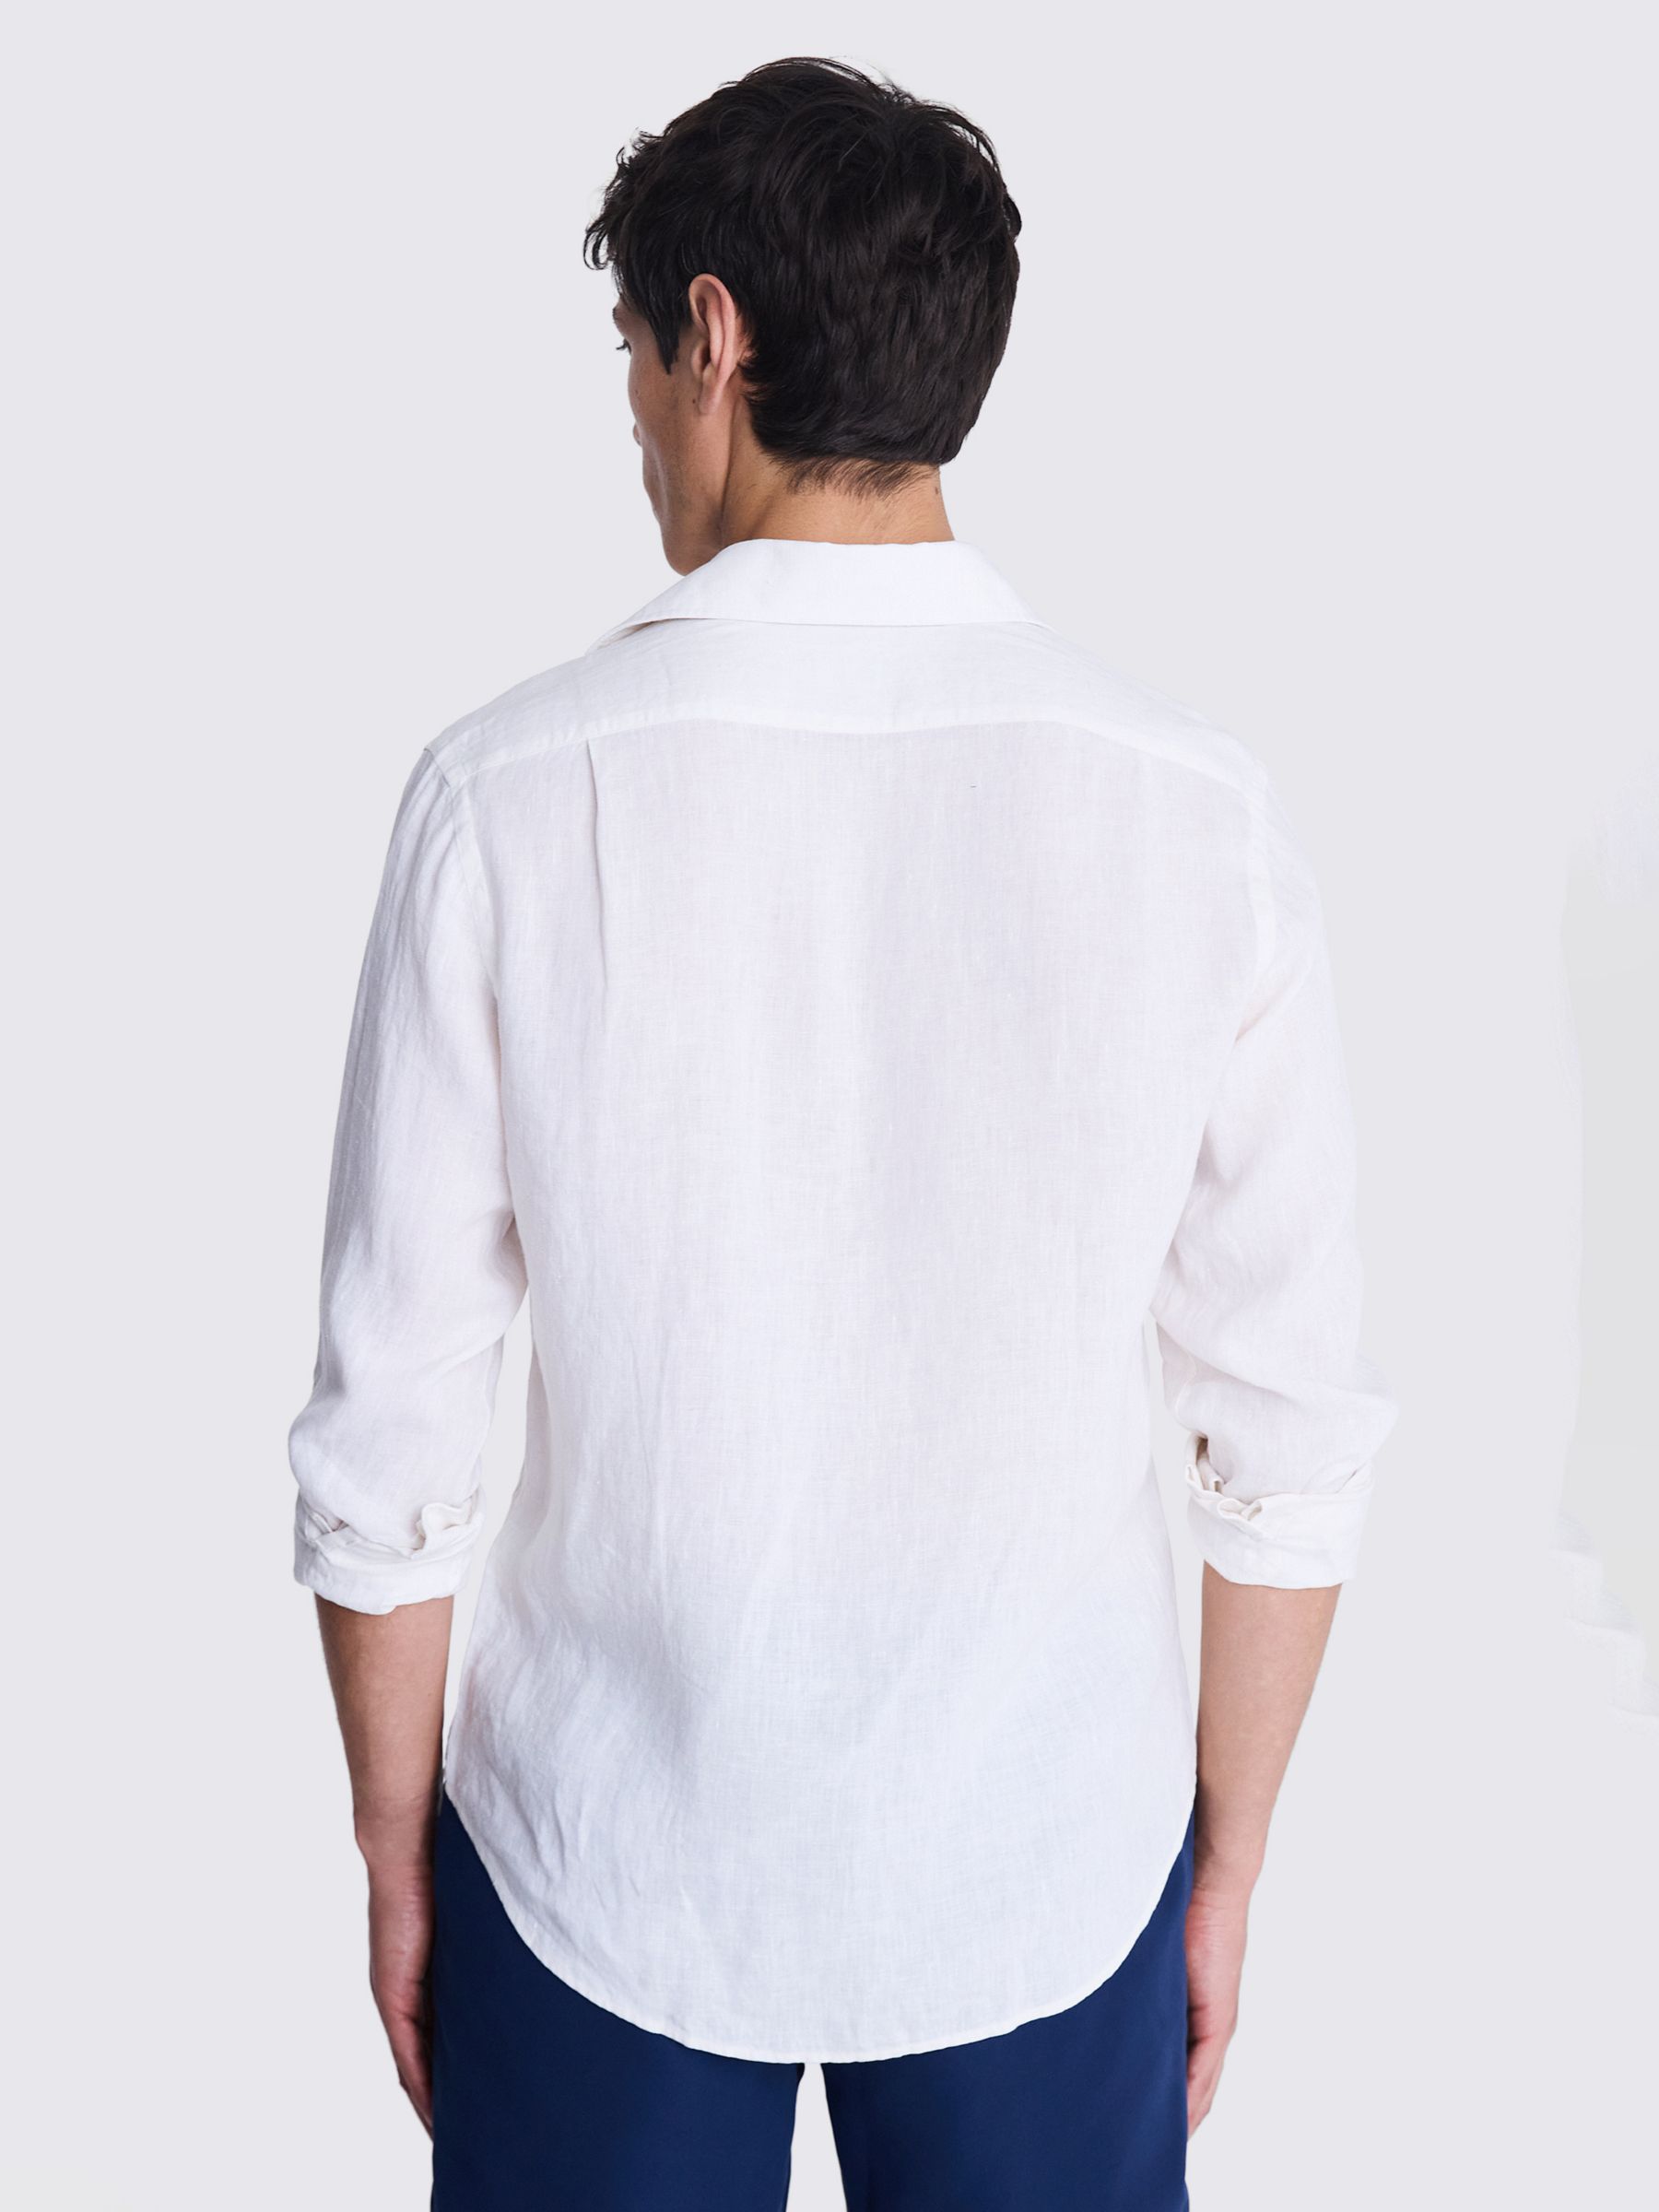 Moss Tailored Fit Linen Shirt, White, XXL